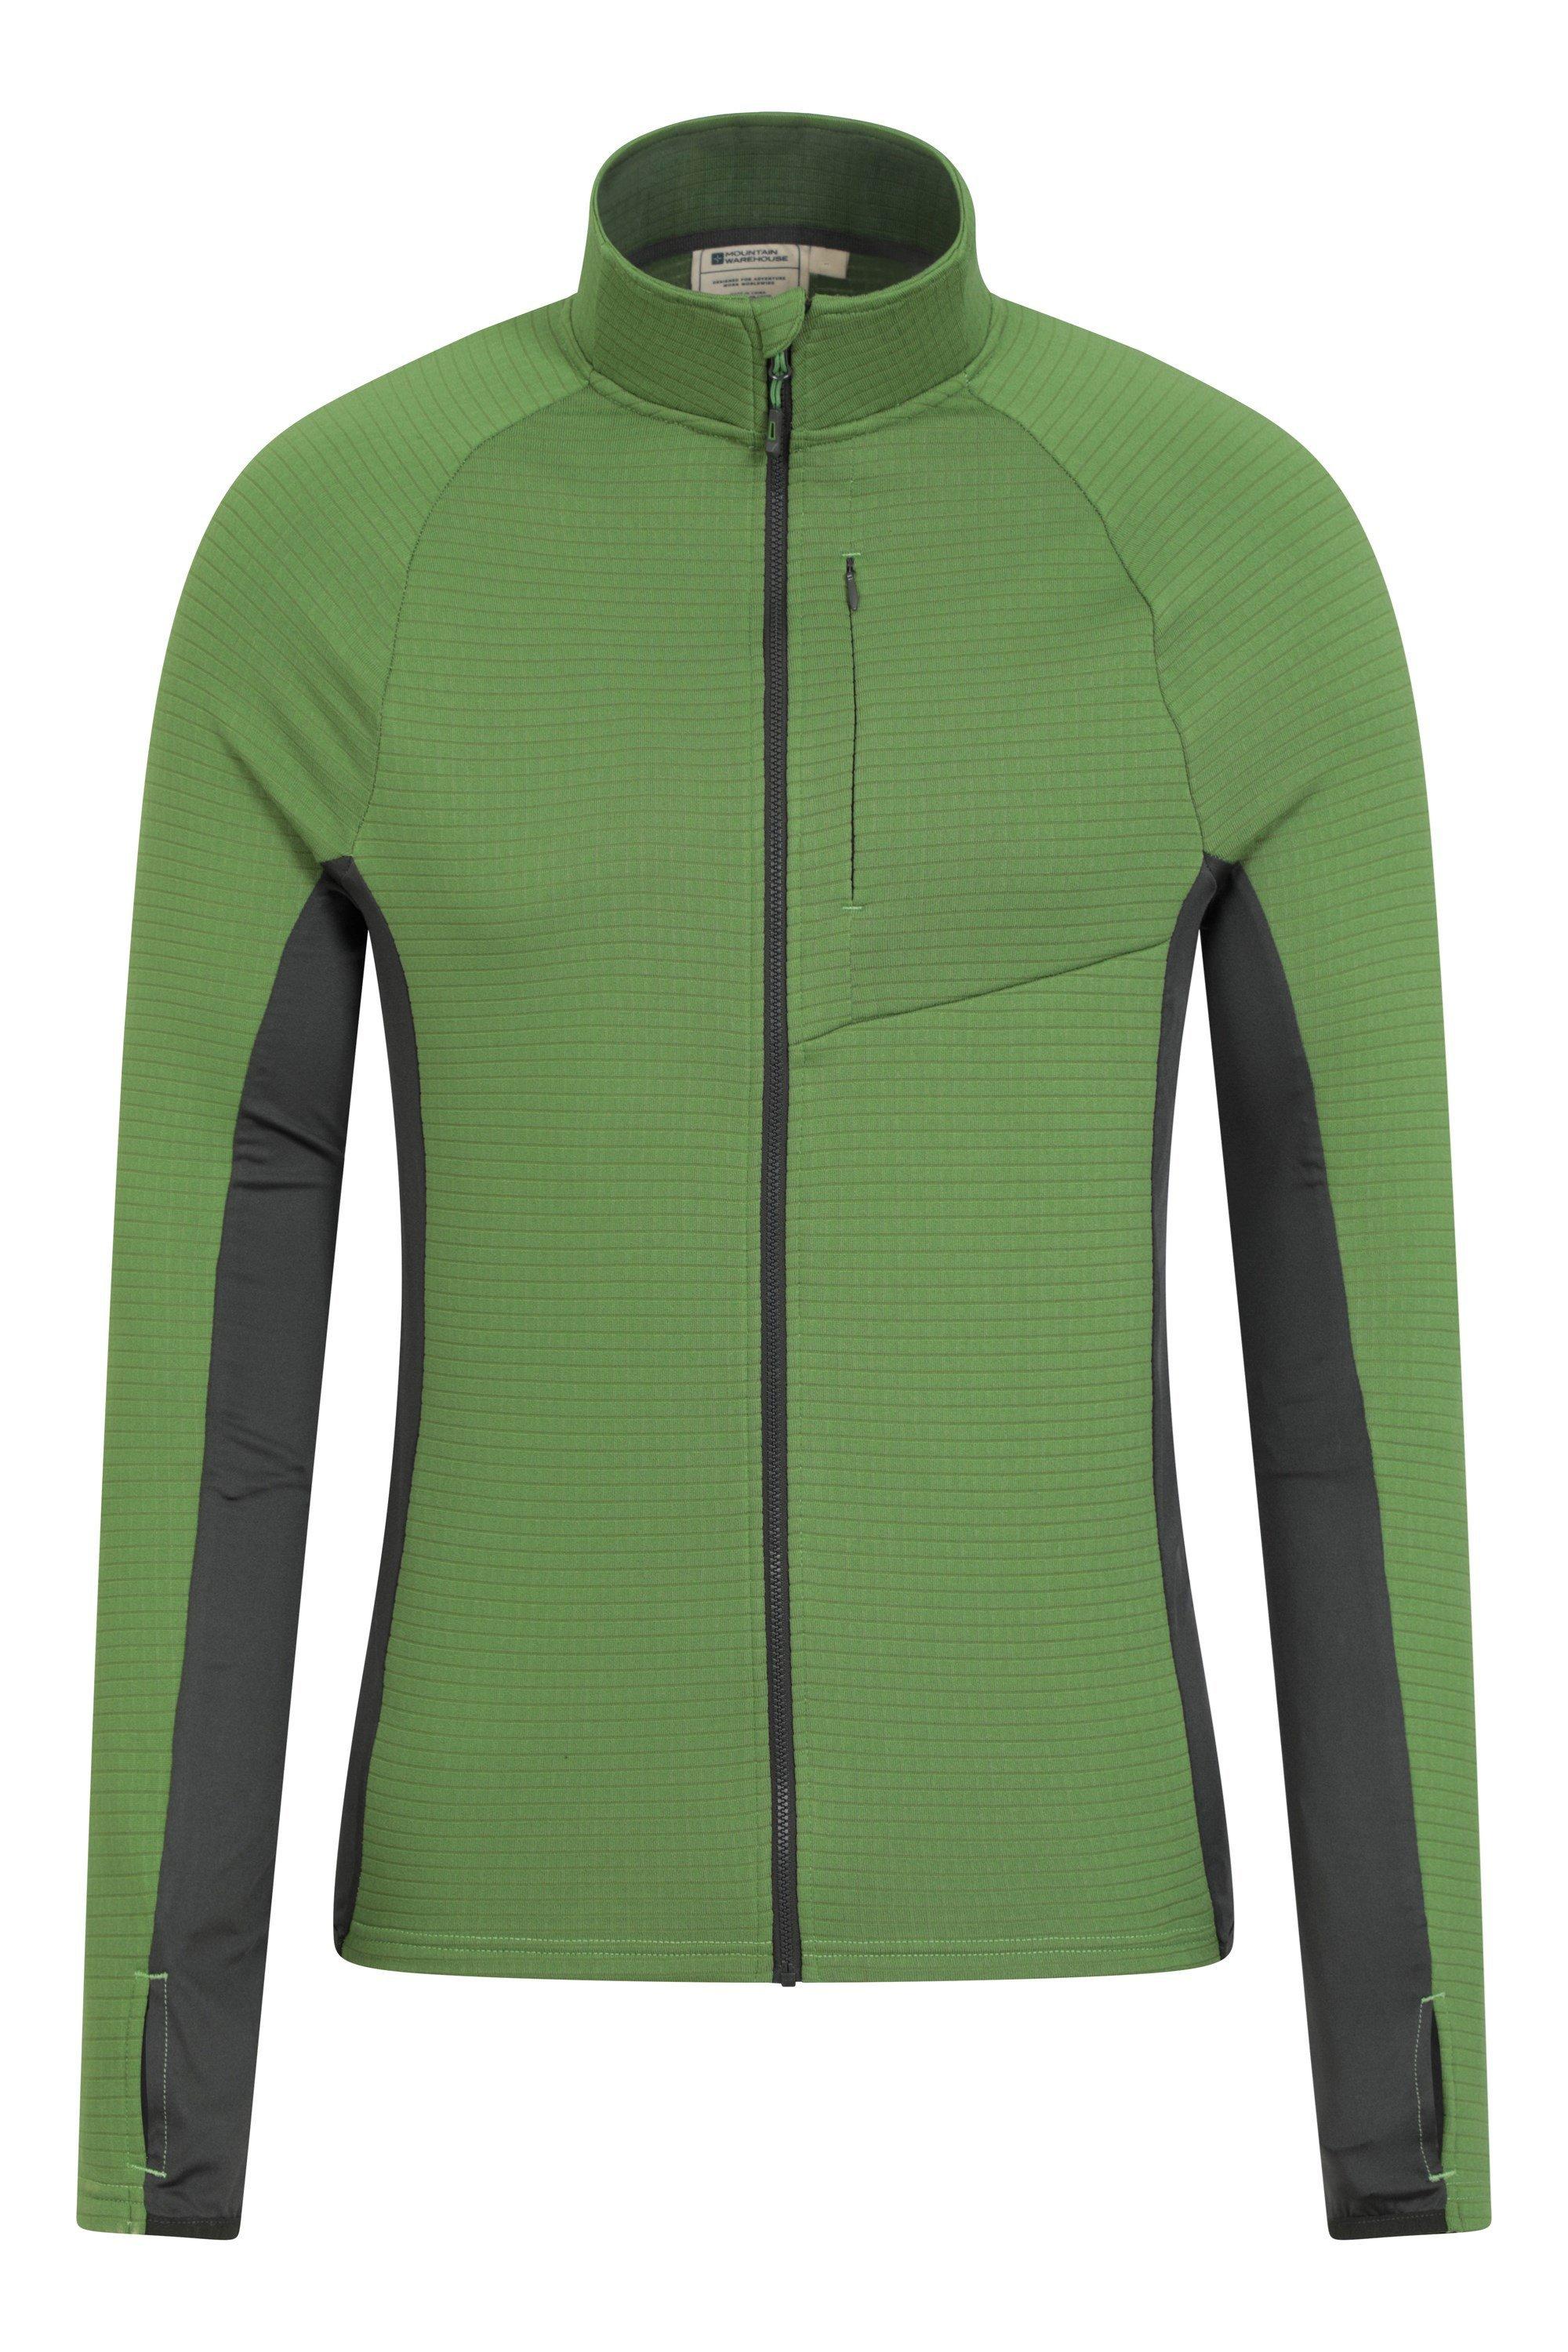 Быстросохнущая флисовая куртка Denali с молнией и полной молнией для походов Mountain Warehouse, зеленый